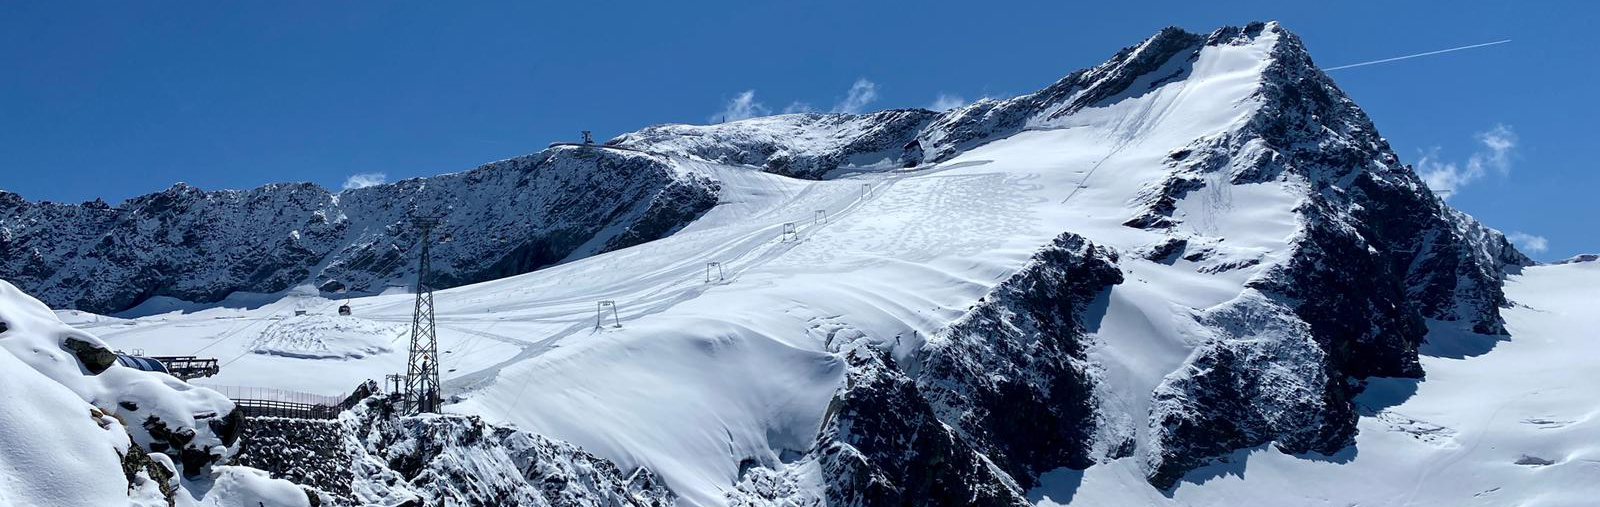 Gletscherskigebiet Sölden, Skifahren im September